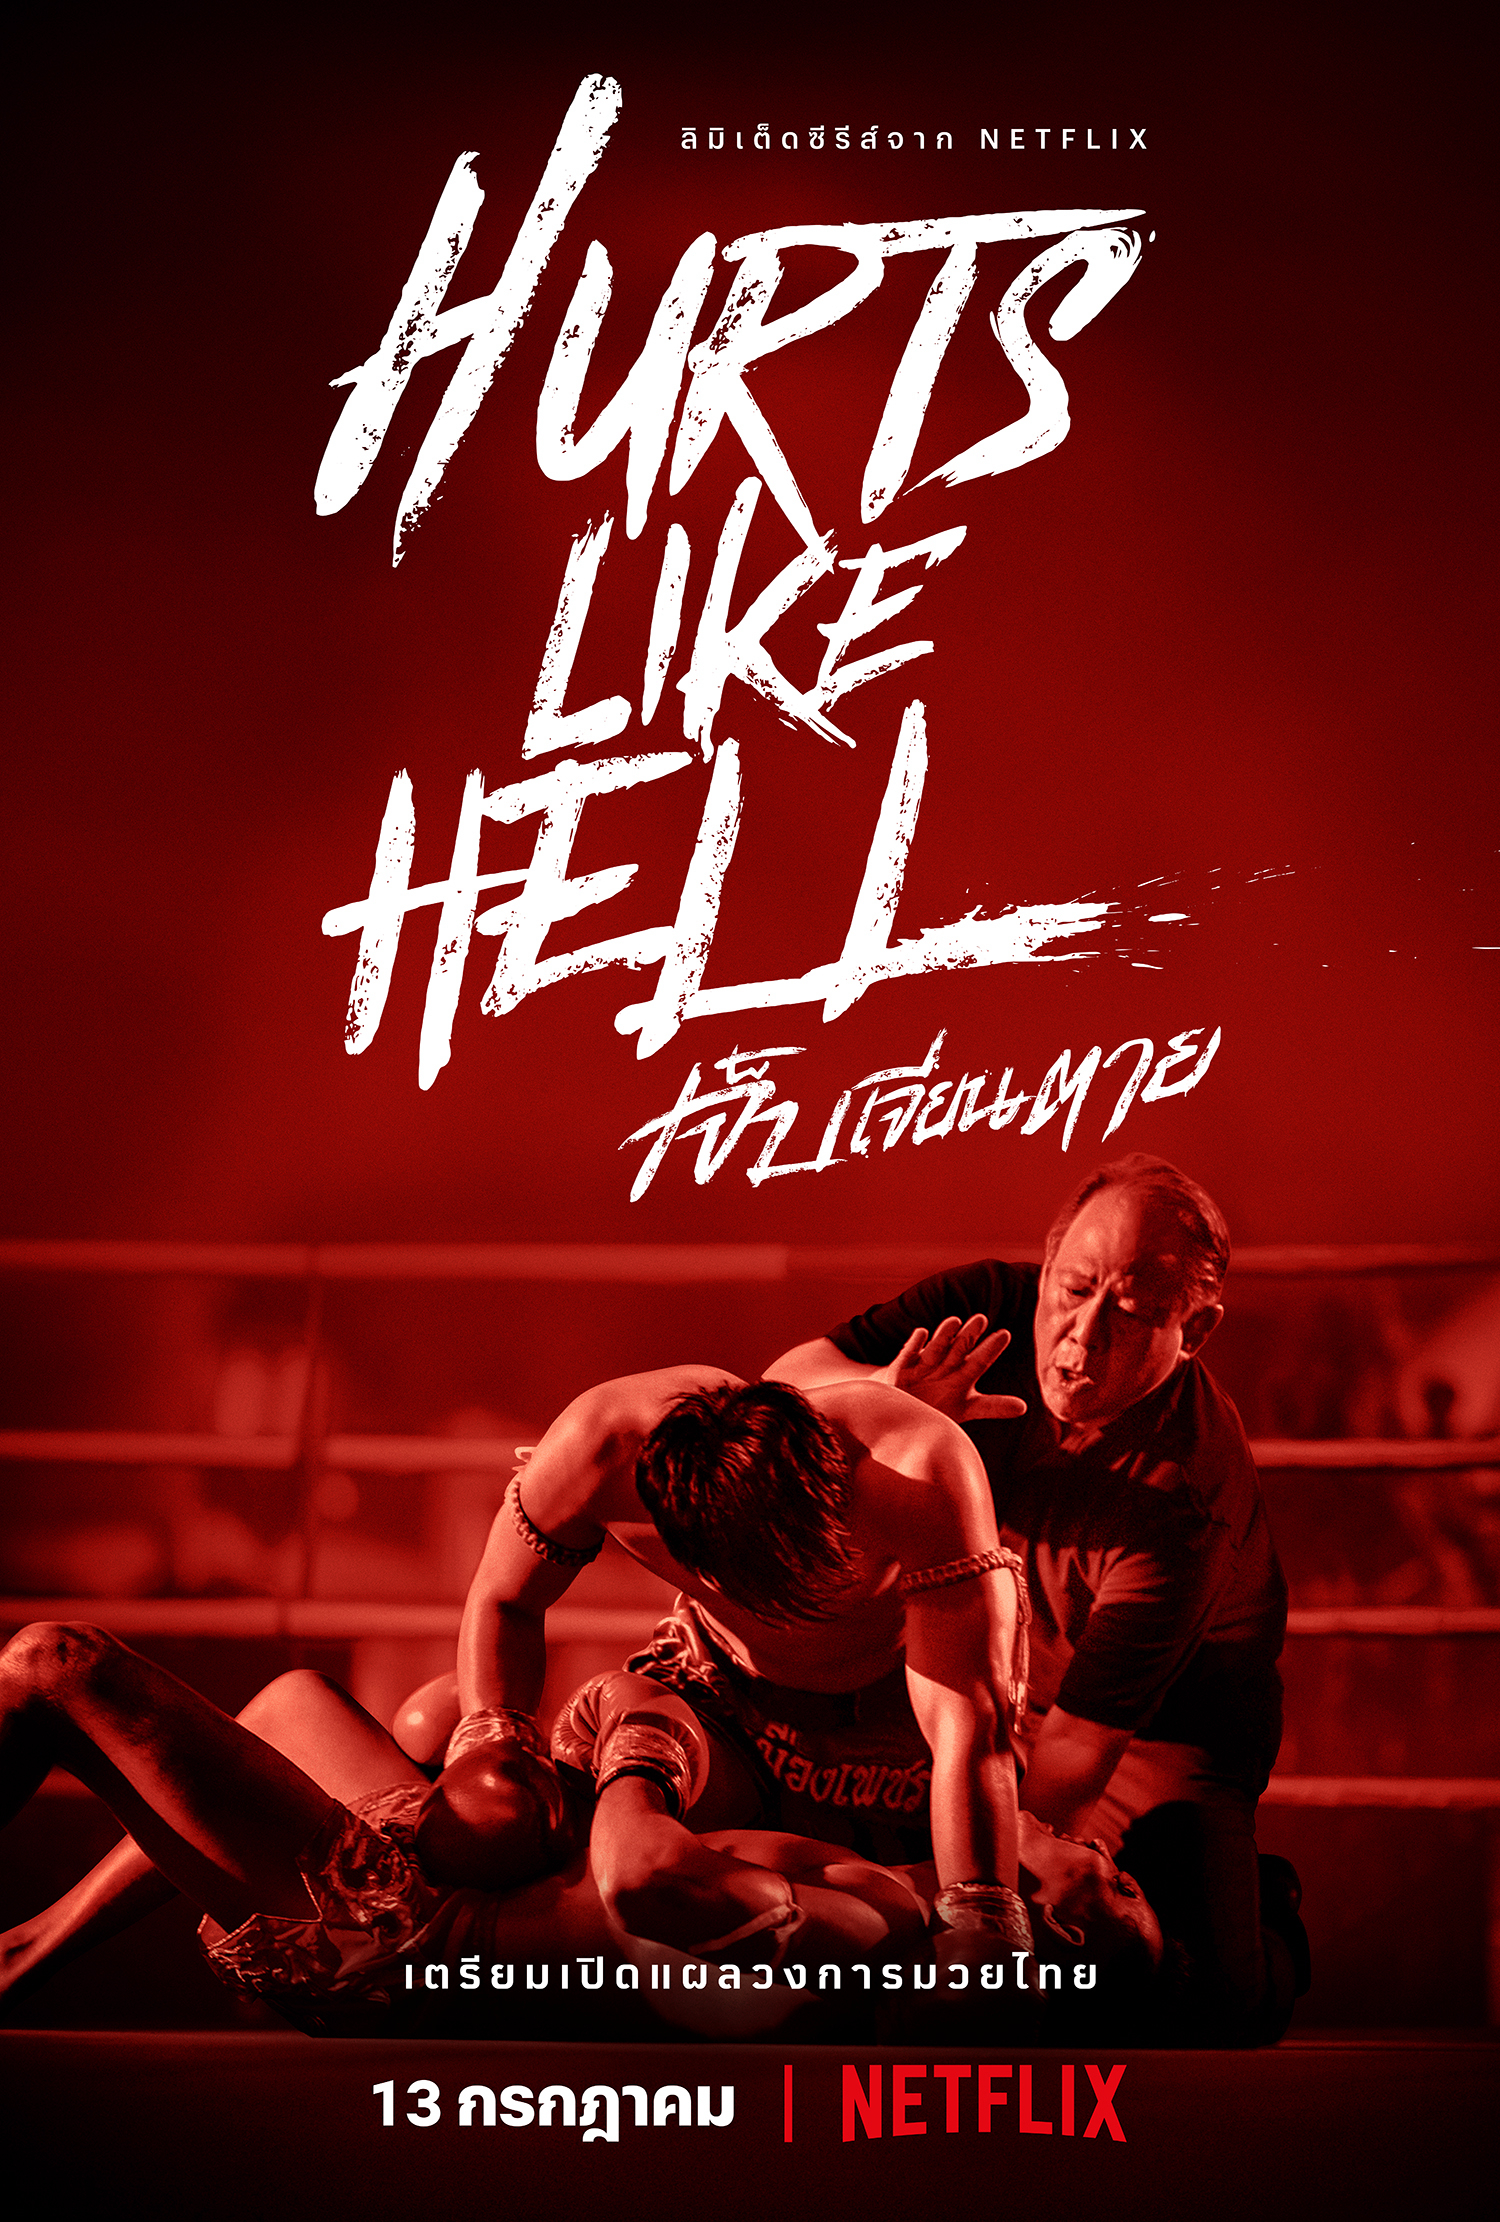 Poster Phim Nỗi đau Muay Thái (Hurts Like Hell)